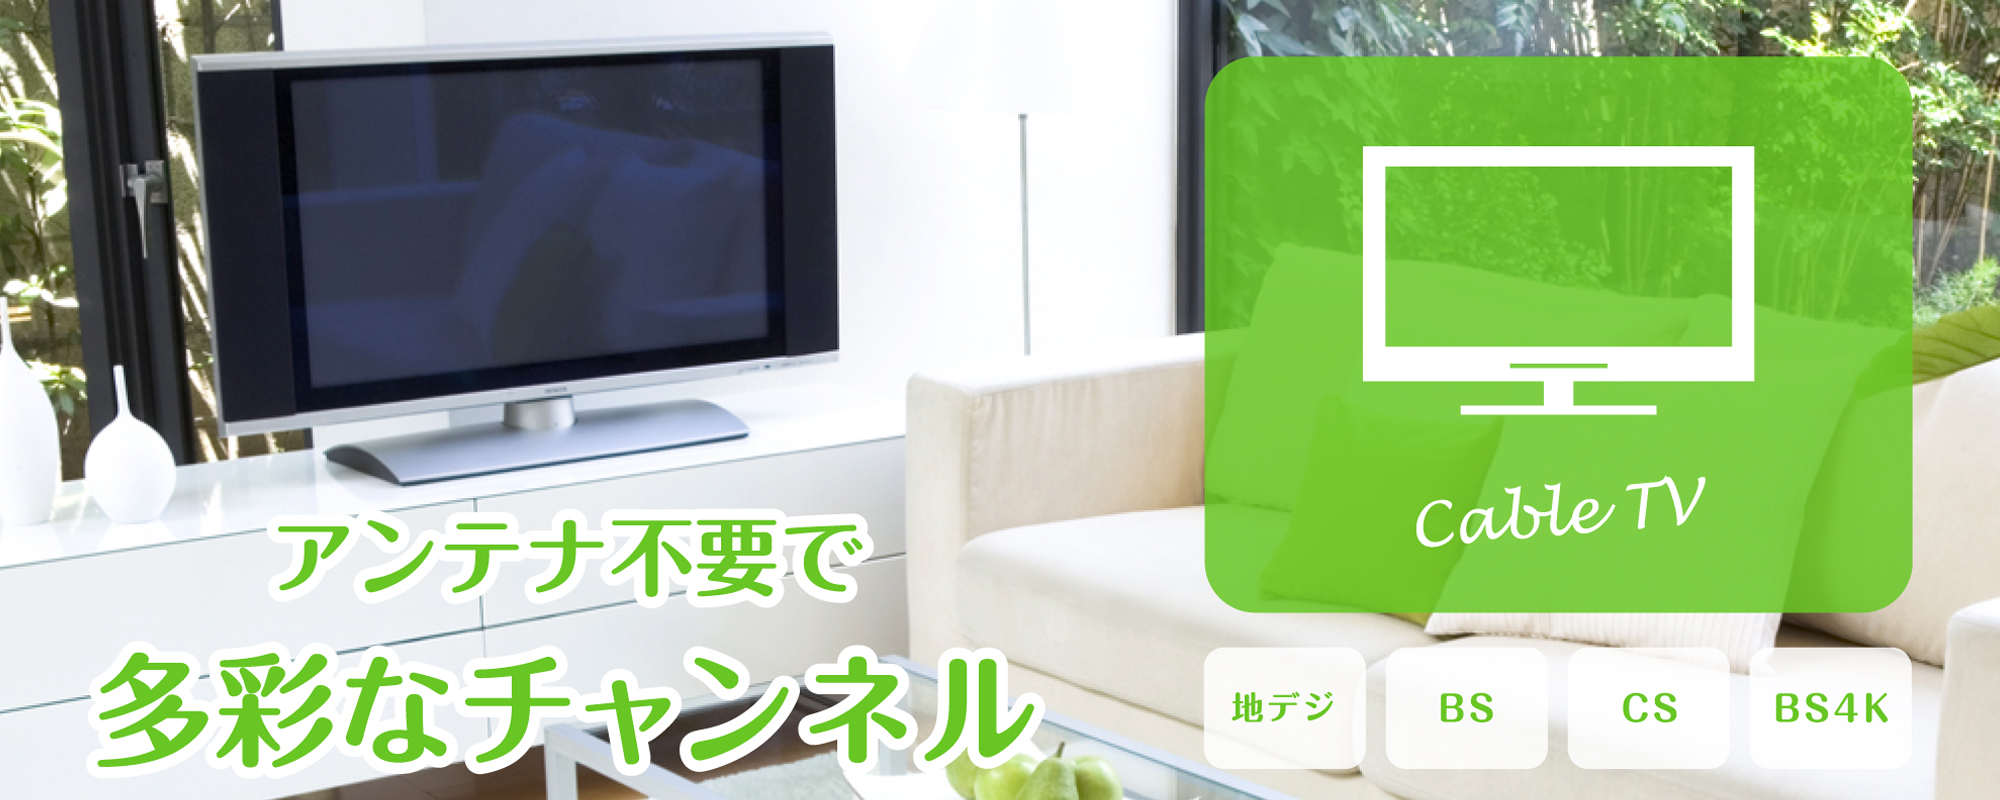 Cable TV Service-ケーブルテレビサービス-｜キビテレビ